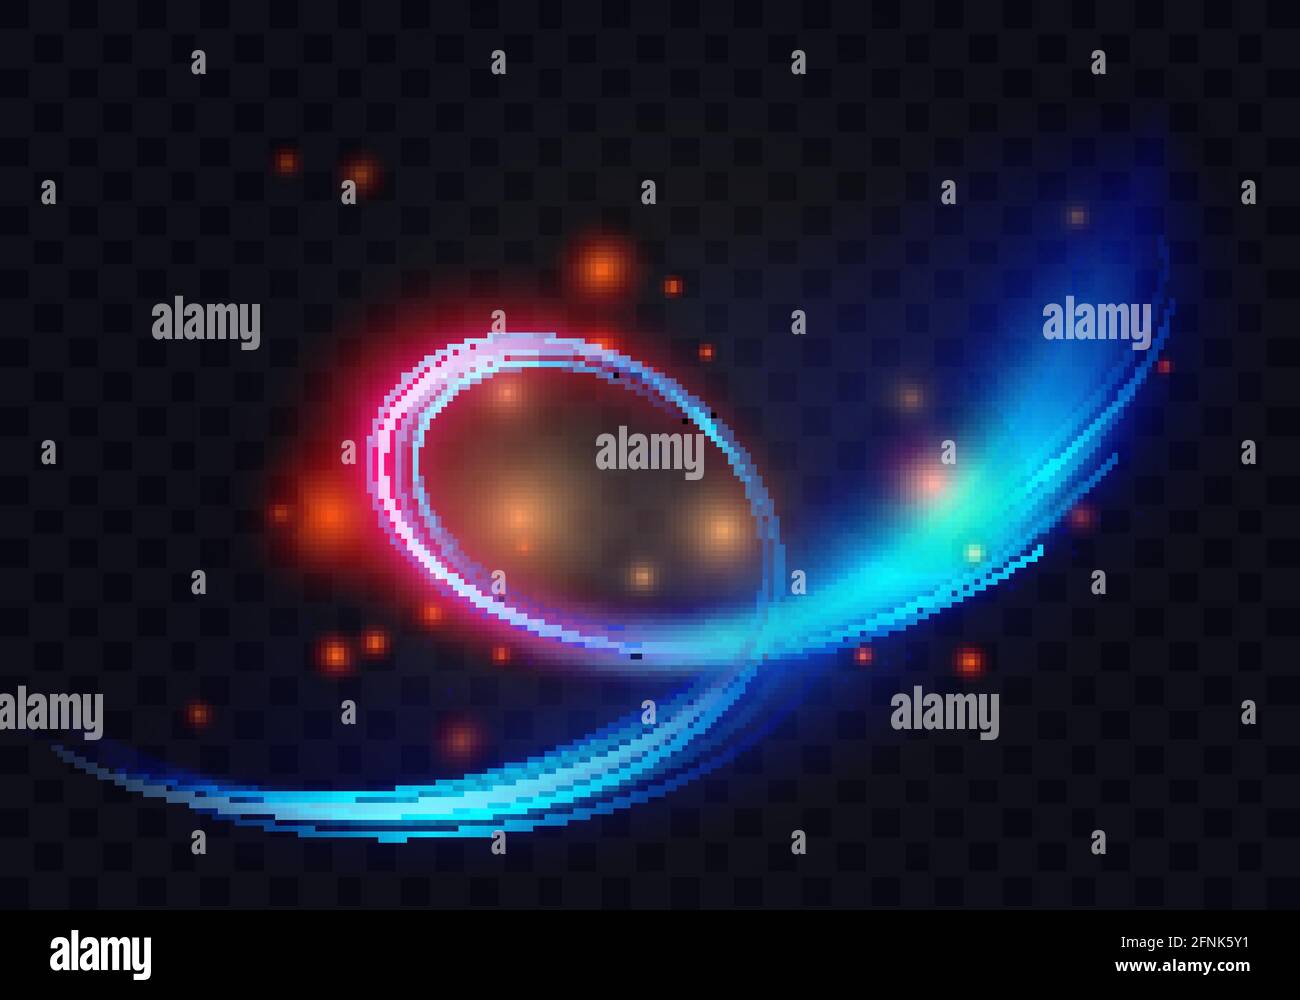 Linee e forme della spirale di turbolenza del cerchio chiaro, illustrazione vettoriale astratta dell'effetto energetico. Gli anelli luminosi al neon brillano con una magia volante, particelle luminose e scintillanti su sfondo nero trasparente Illustrazione Vettoriale